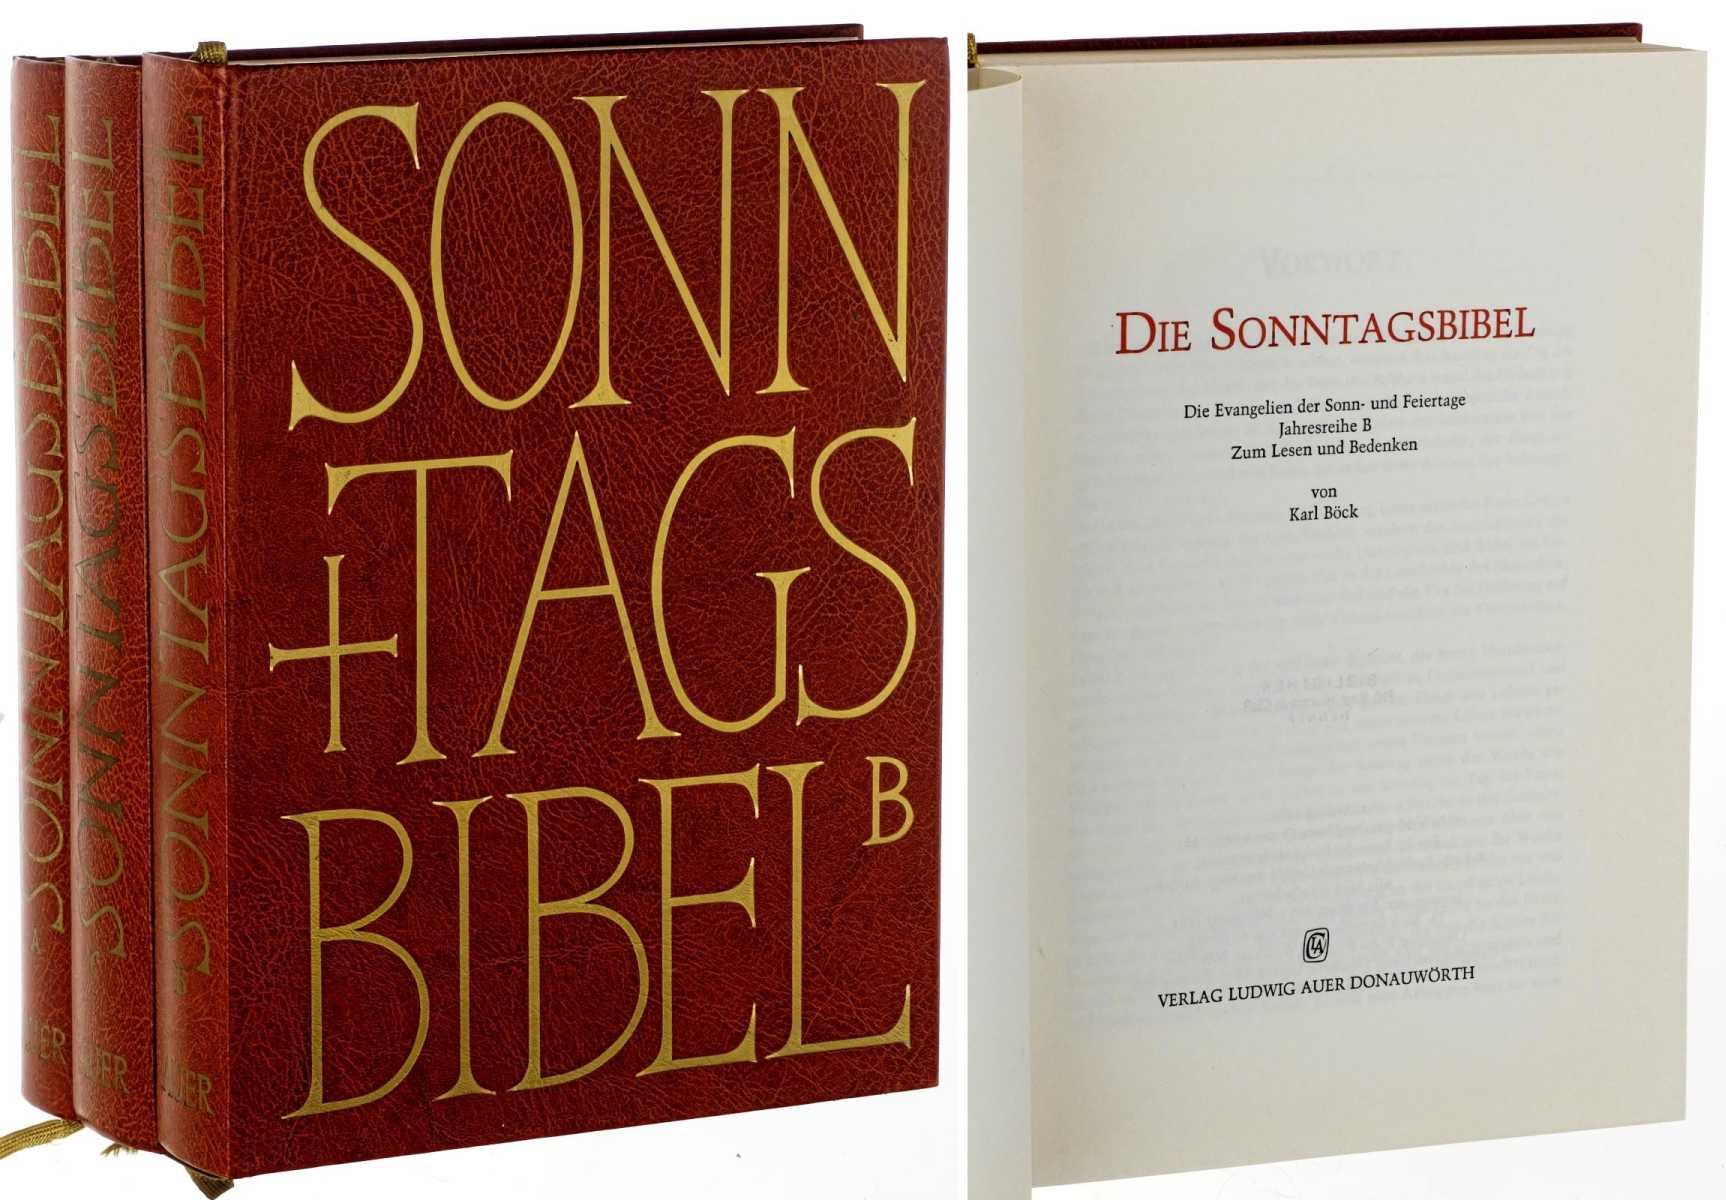 Böck, Karl:  Die Sonntagsbibel. Die Evangelien der Sonn- und Feiertage. Zum Lesen und Bedenken. 